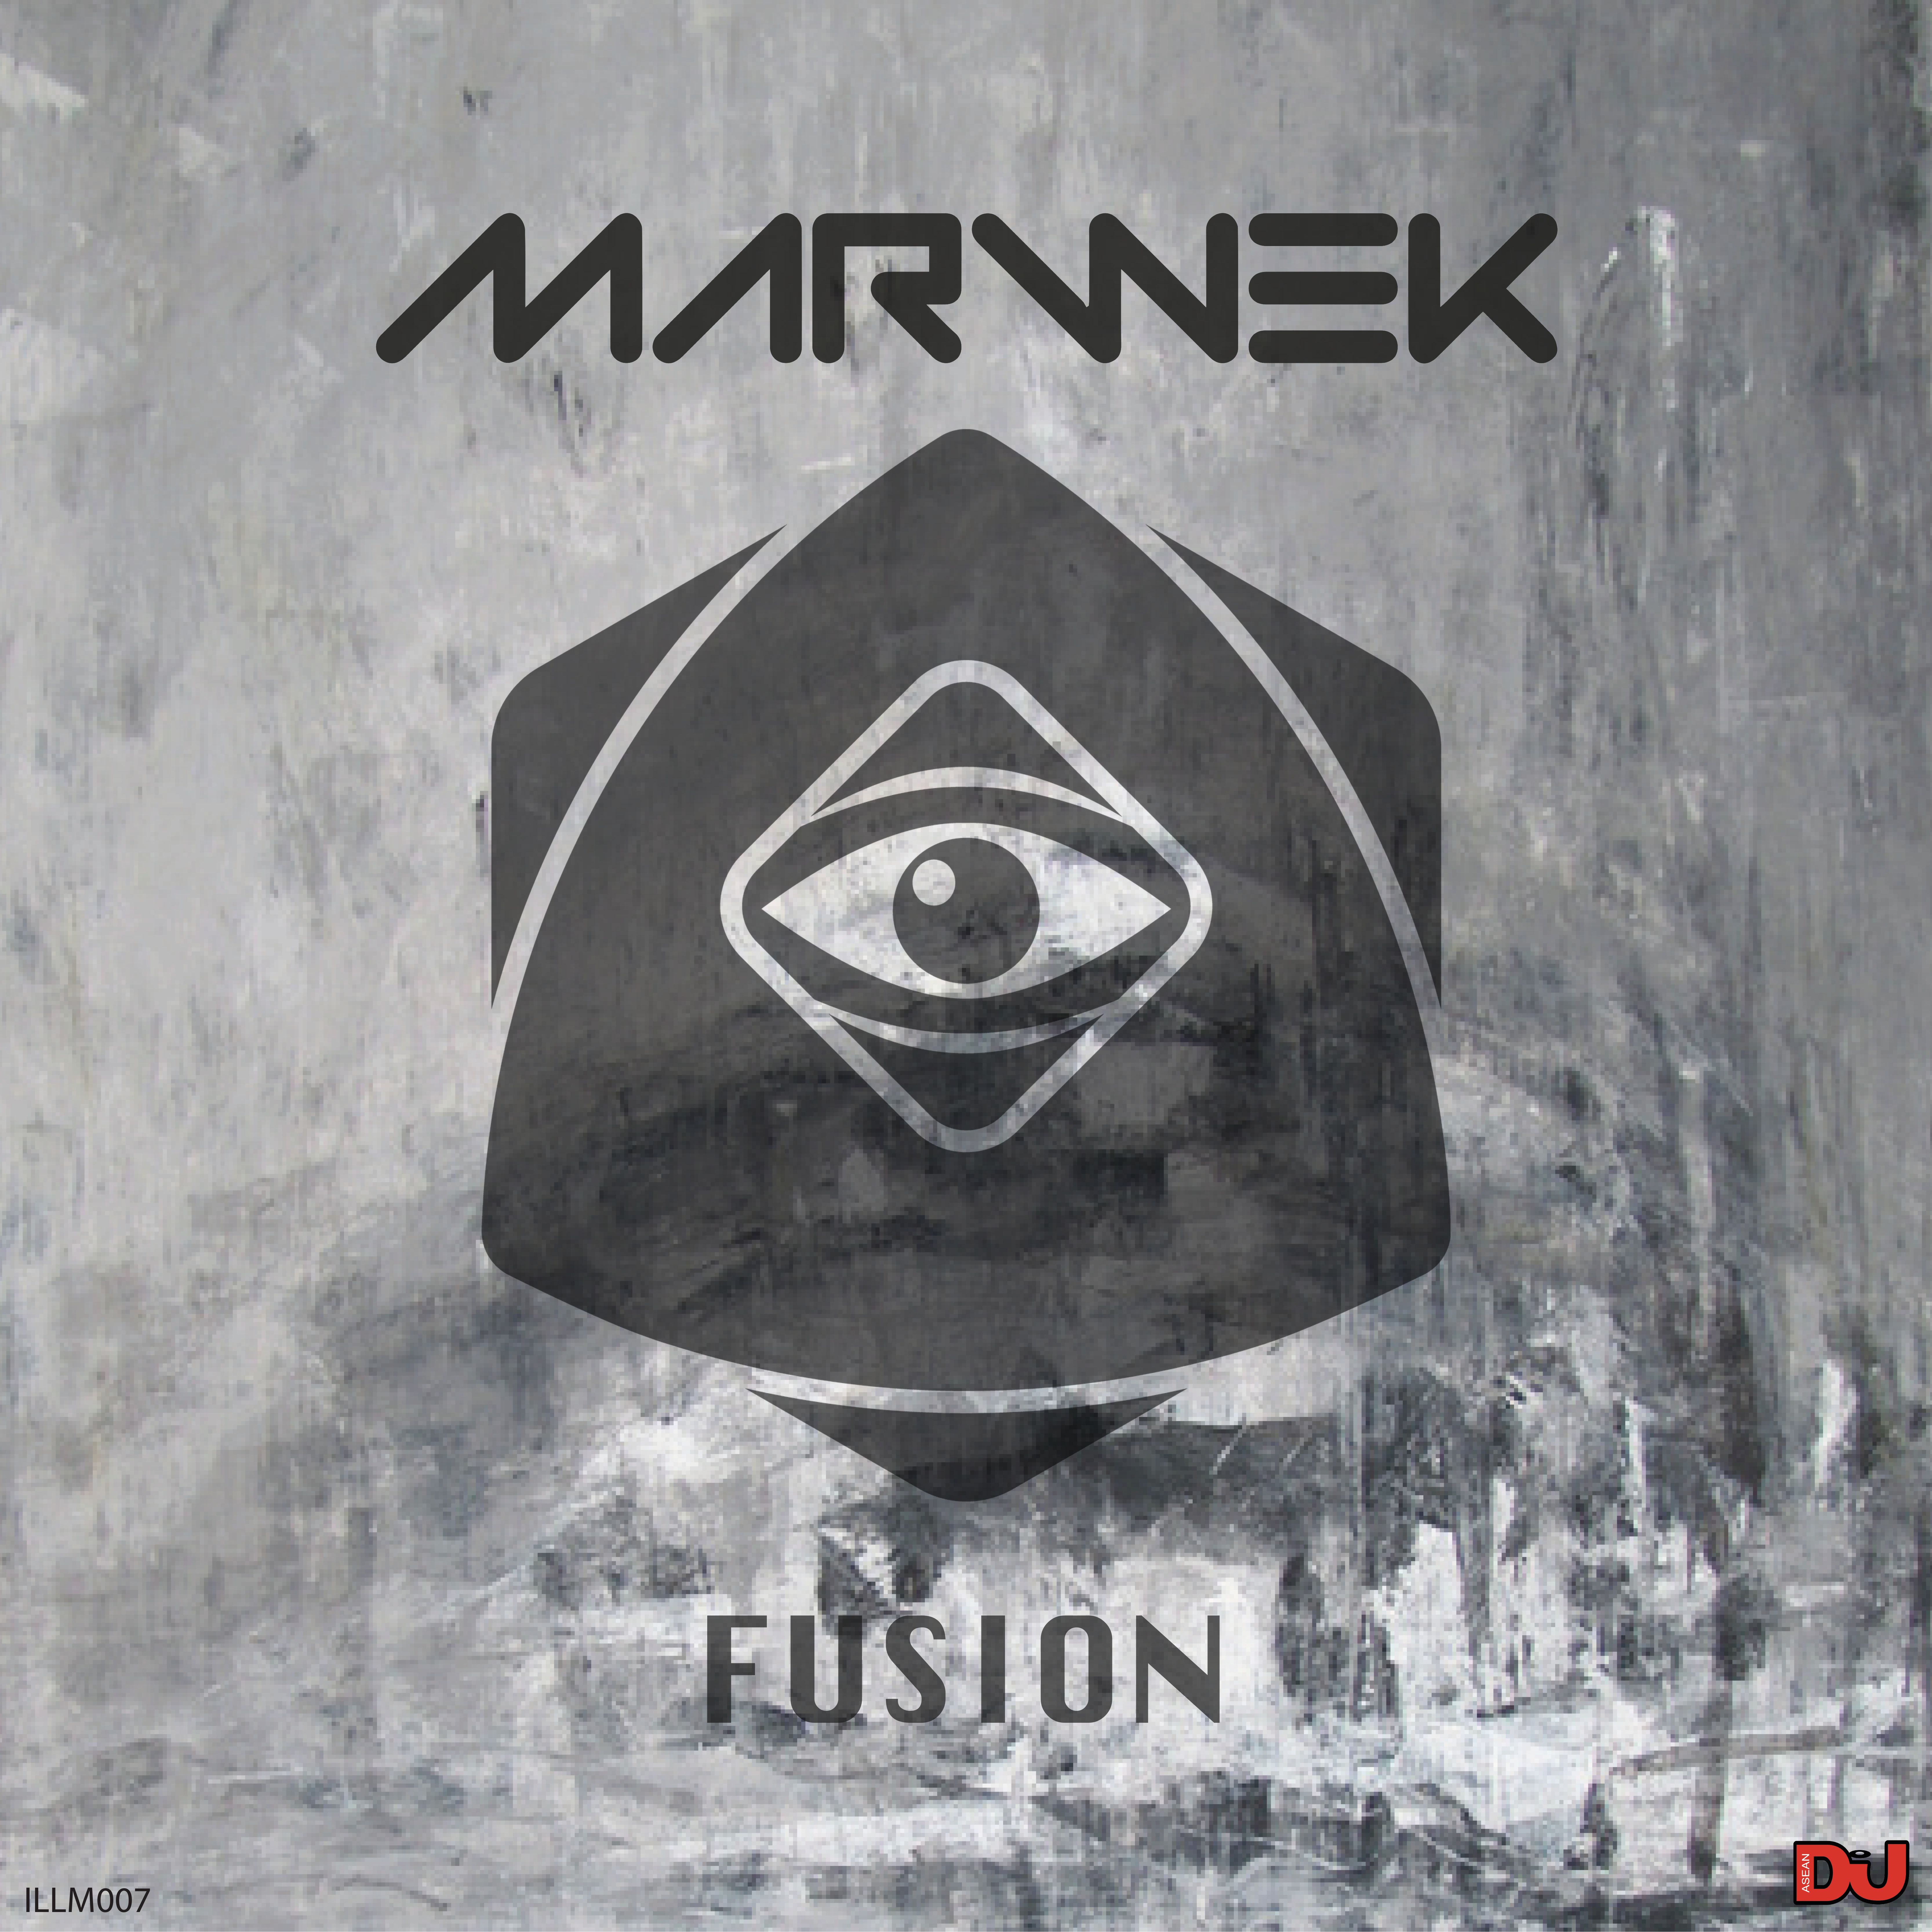 Ladata Marwek - Fusion (Original Mix)